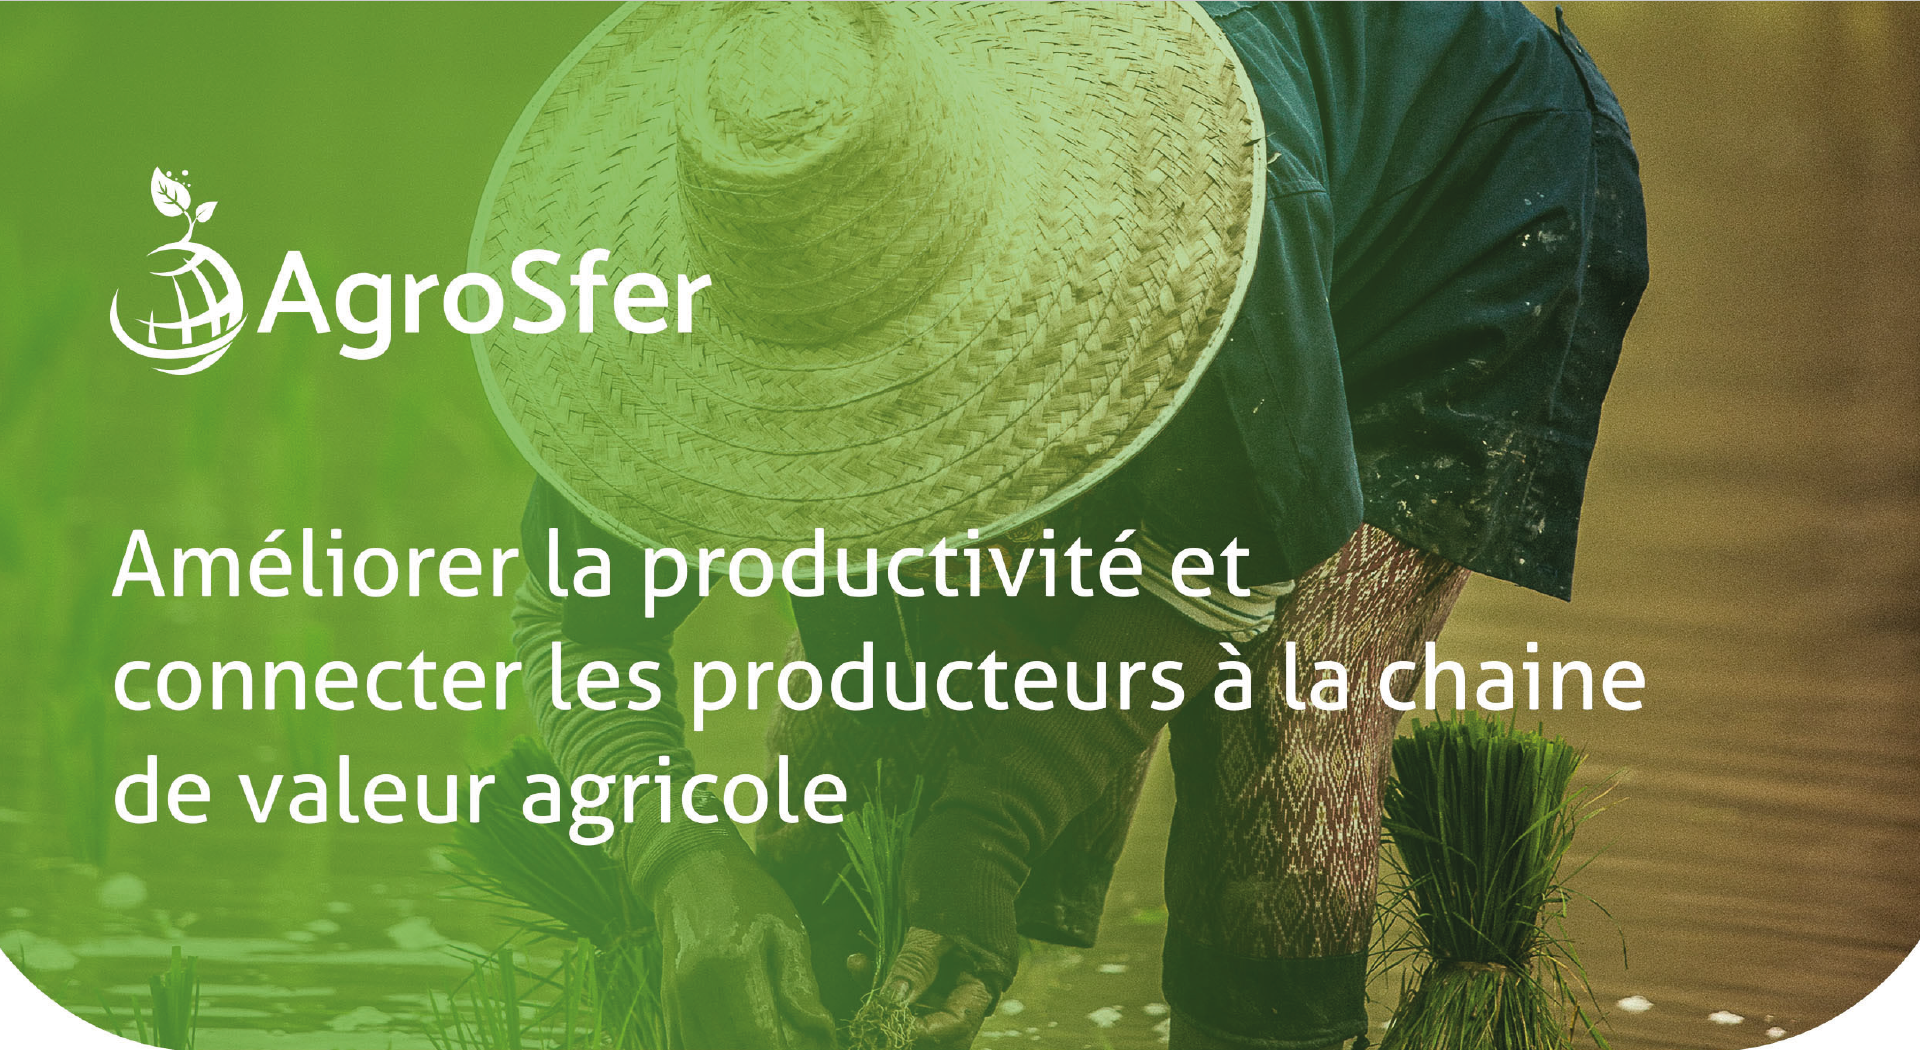 AgroSfer digitalise les chaînes de valeur agricoles en Afrique